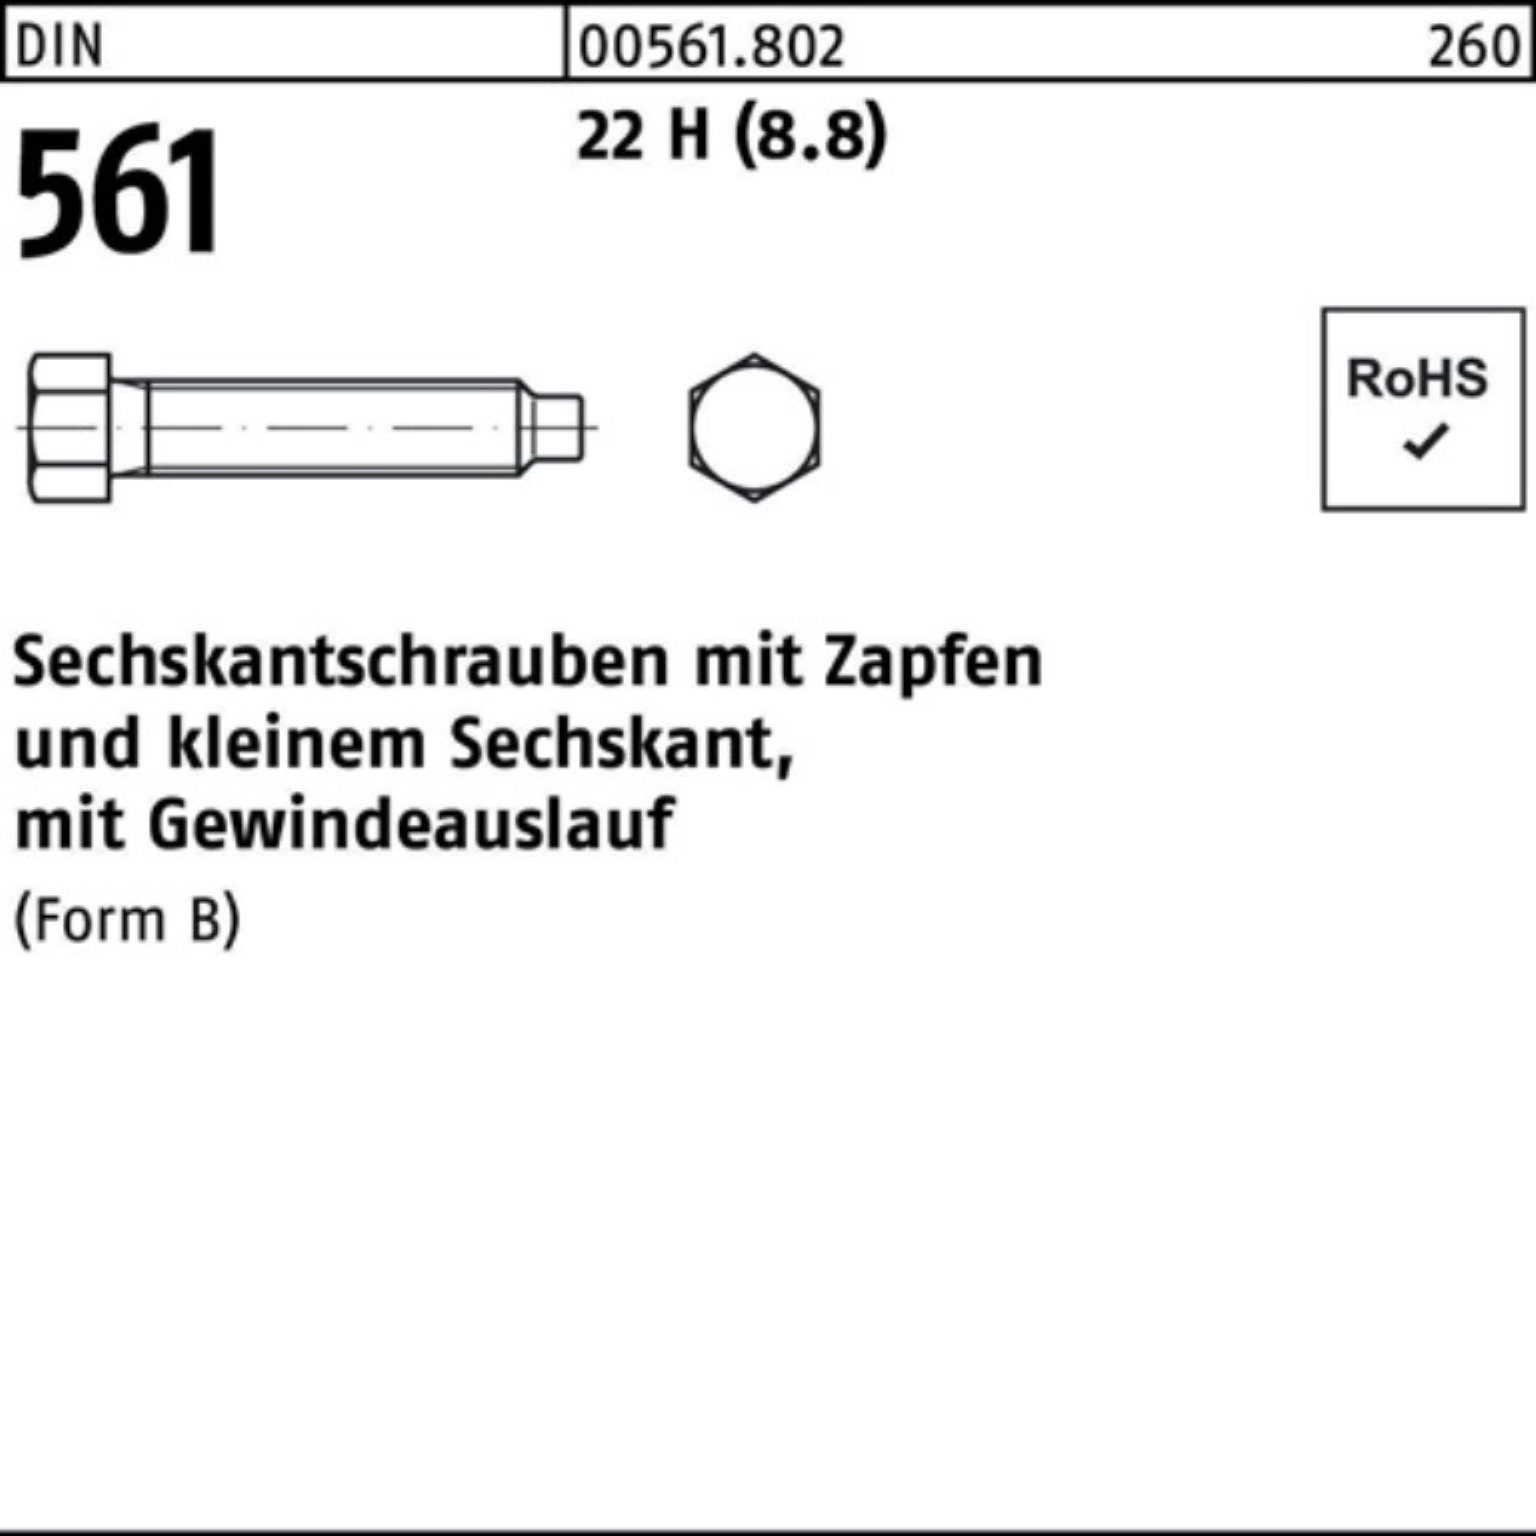 Reyher Sechskantschraube Sechskantschraube 22 24x BM 140 Zapfen (8.8) 1 100er DIN Pack 561 St H